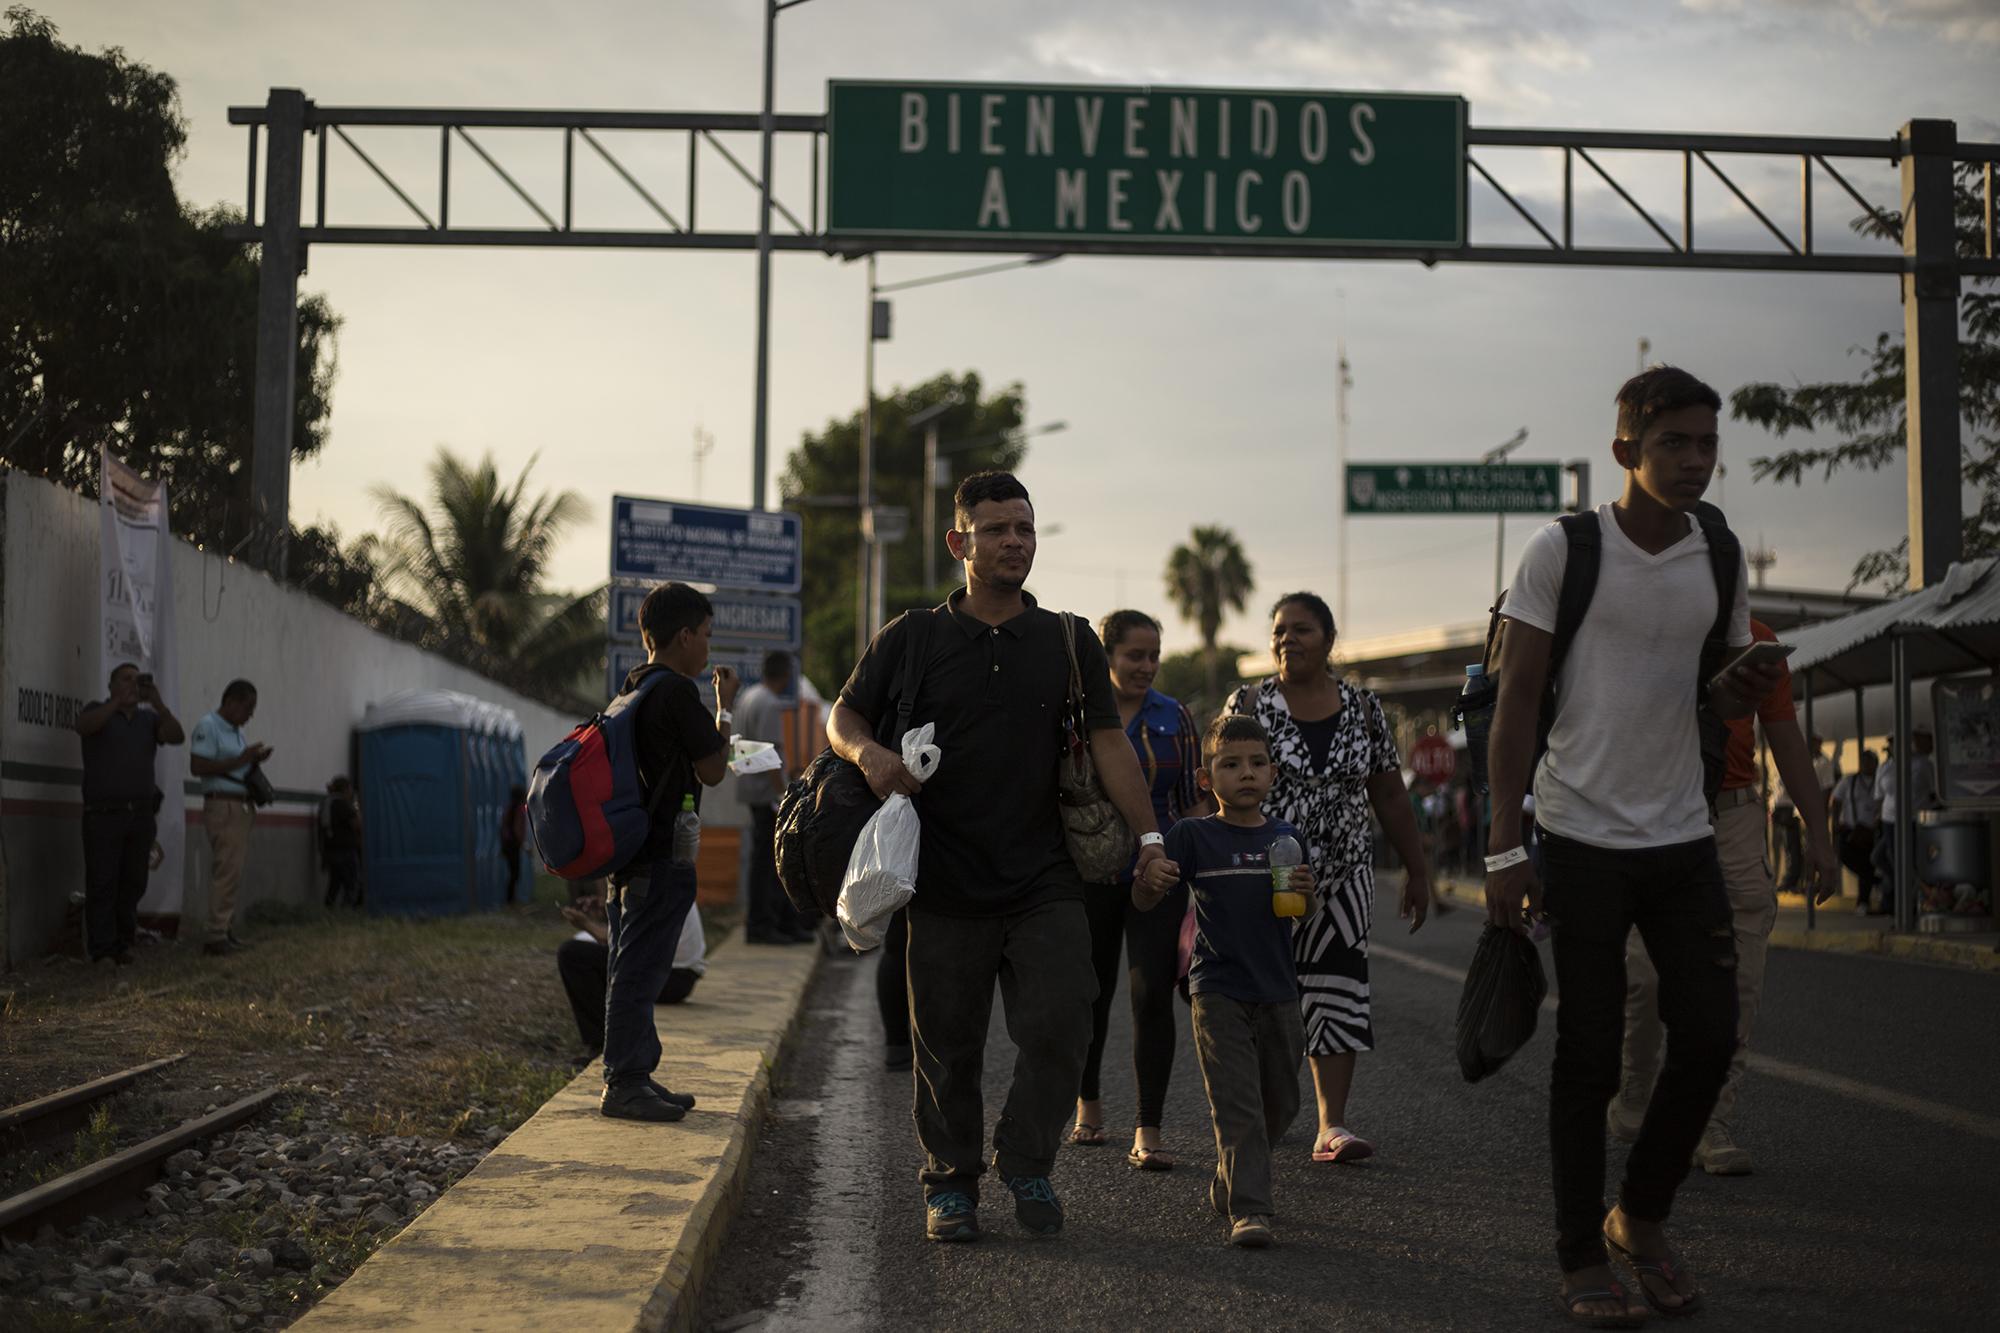 Una familia camina justo después de haberse registrado en la aduana de Ciudad Hidalgo, en México. El Gobierno de México ha pedido a los migrantes que se someten a este proceso cinco días de espera para obtener una visa humanitaria. Foto: Víctor Peña.